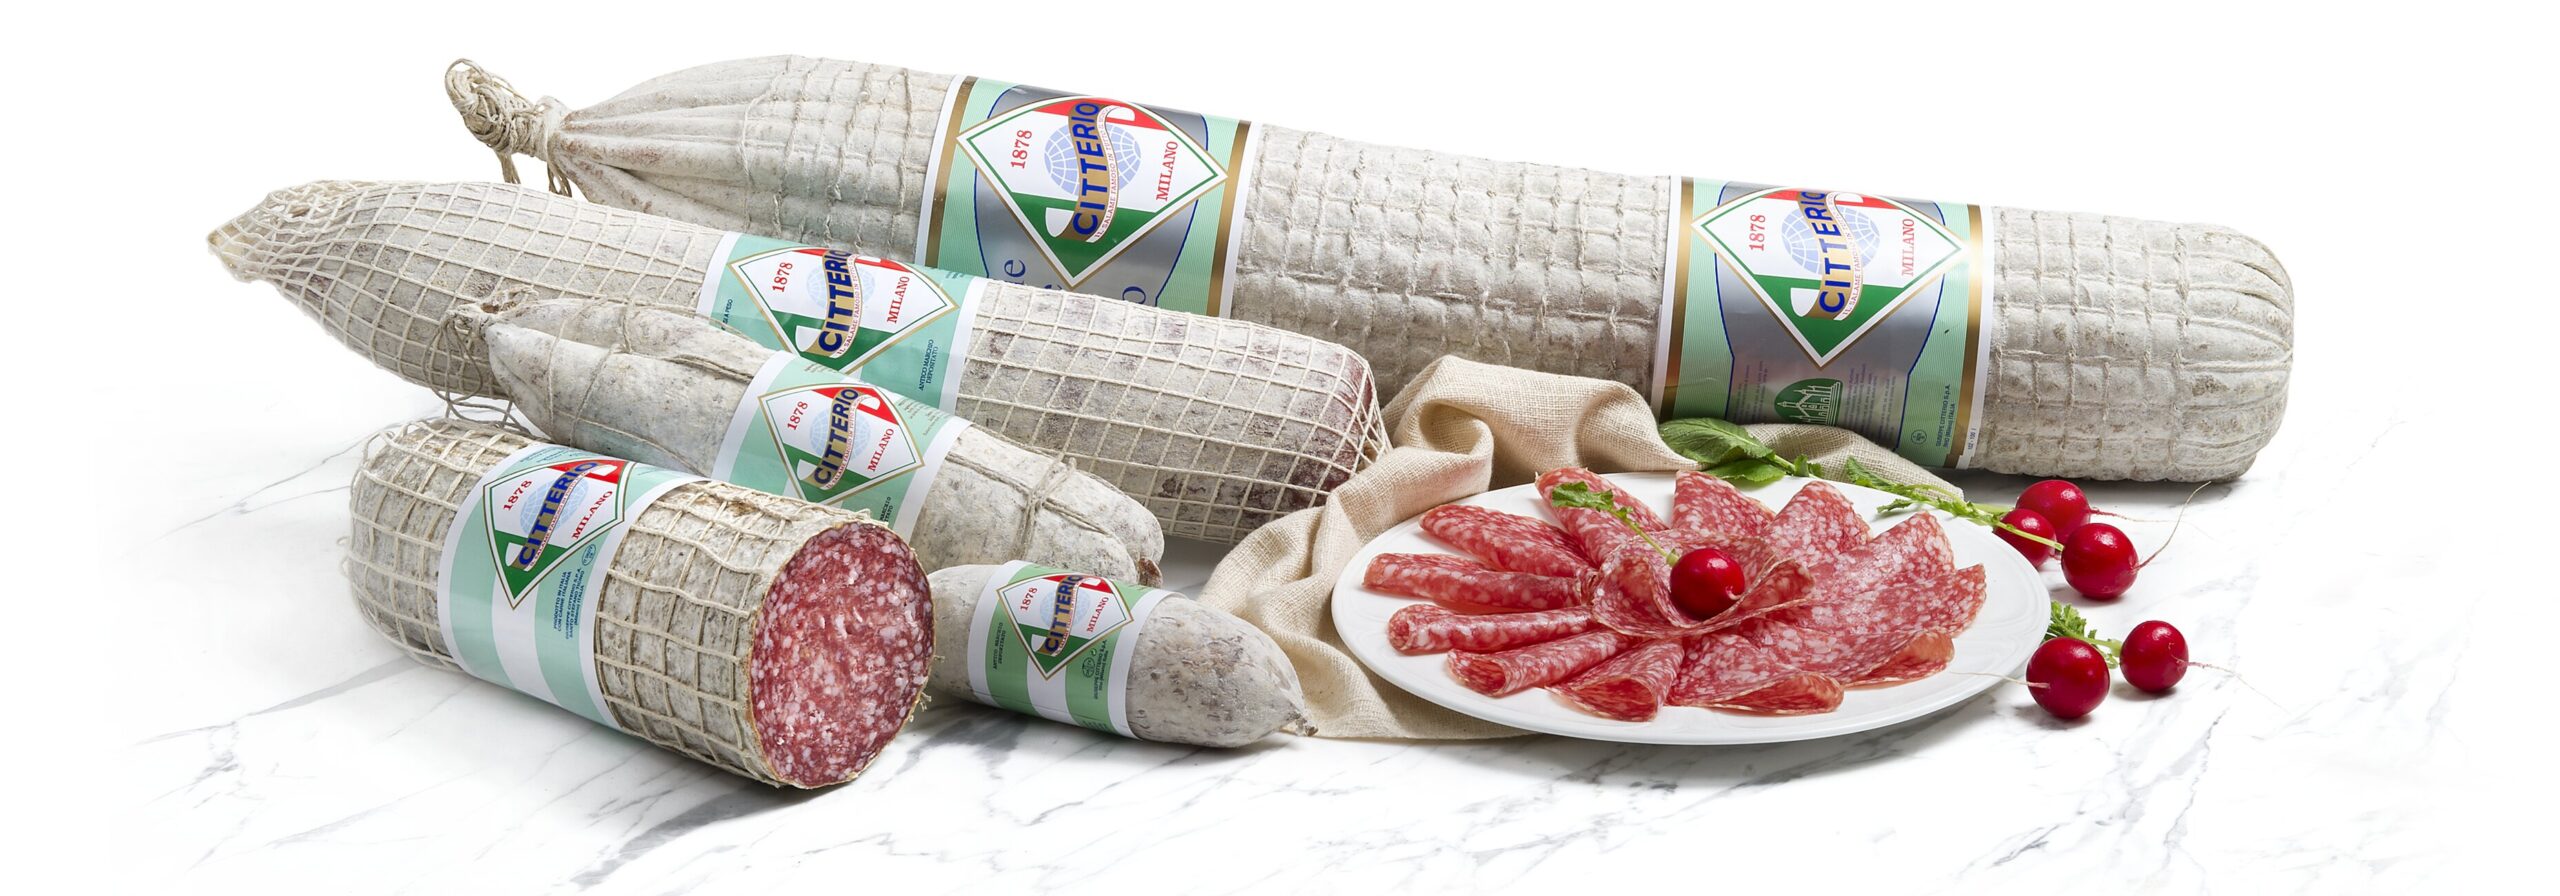 Lebensmittelimport von Citterio Bonizzi Alberto AG Produkten 